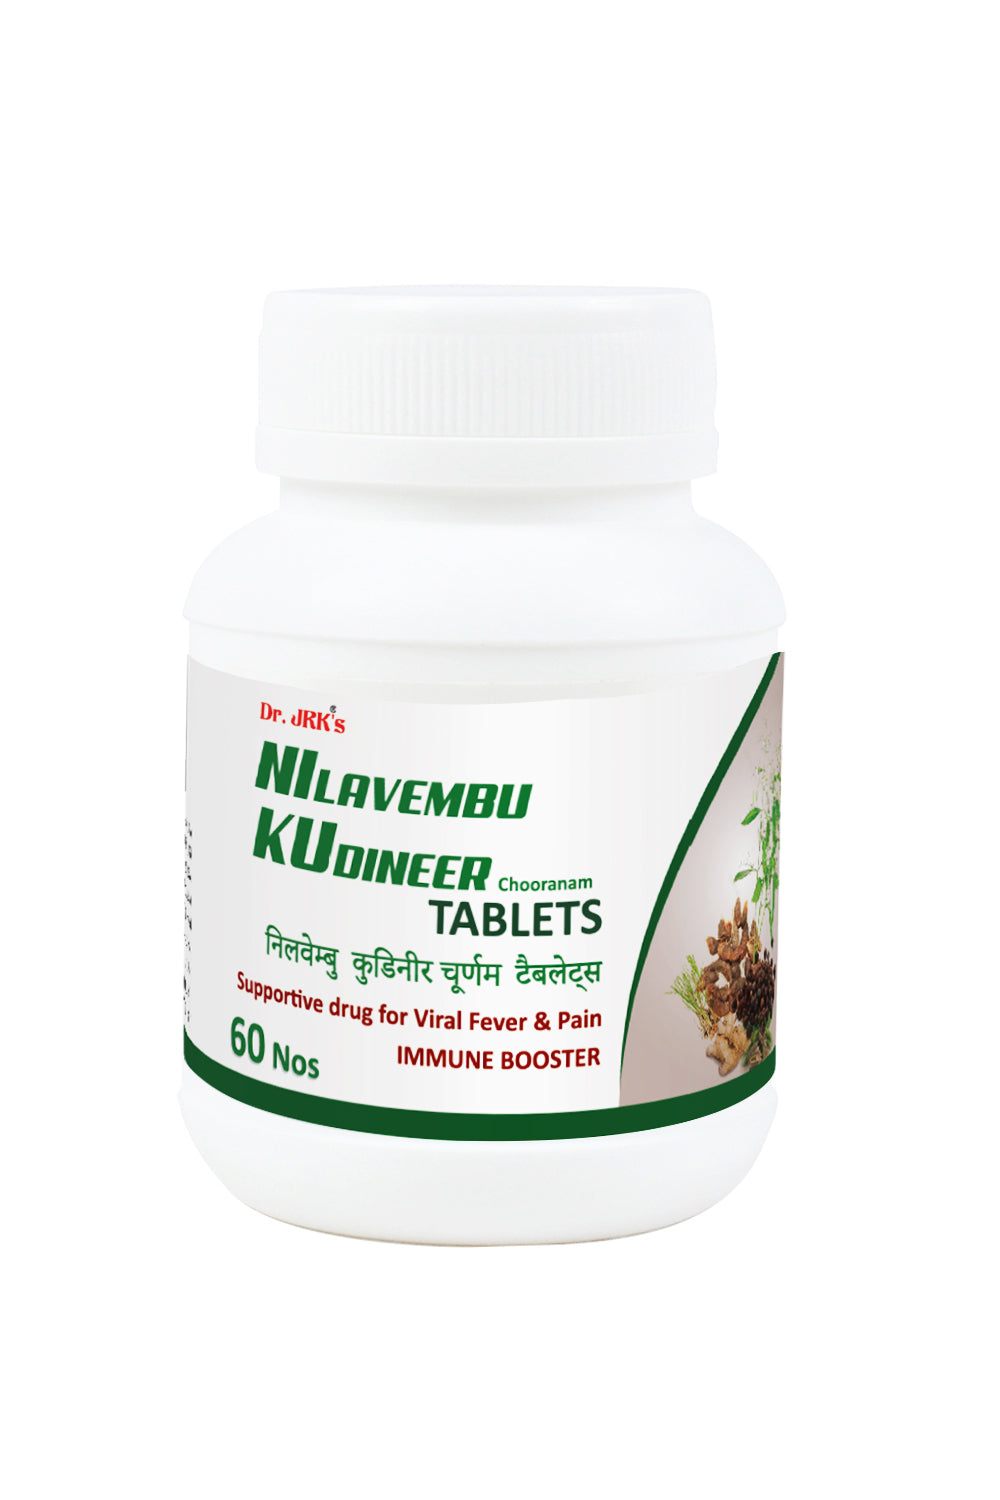 Dr. JRK's Nilavembu Kudineer Chooranam Tablets 60 no's